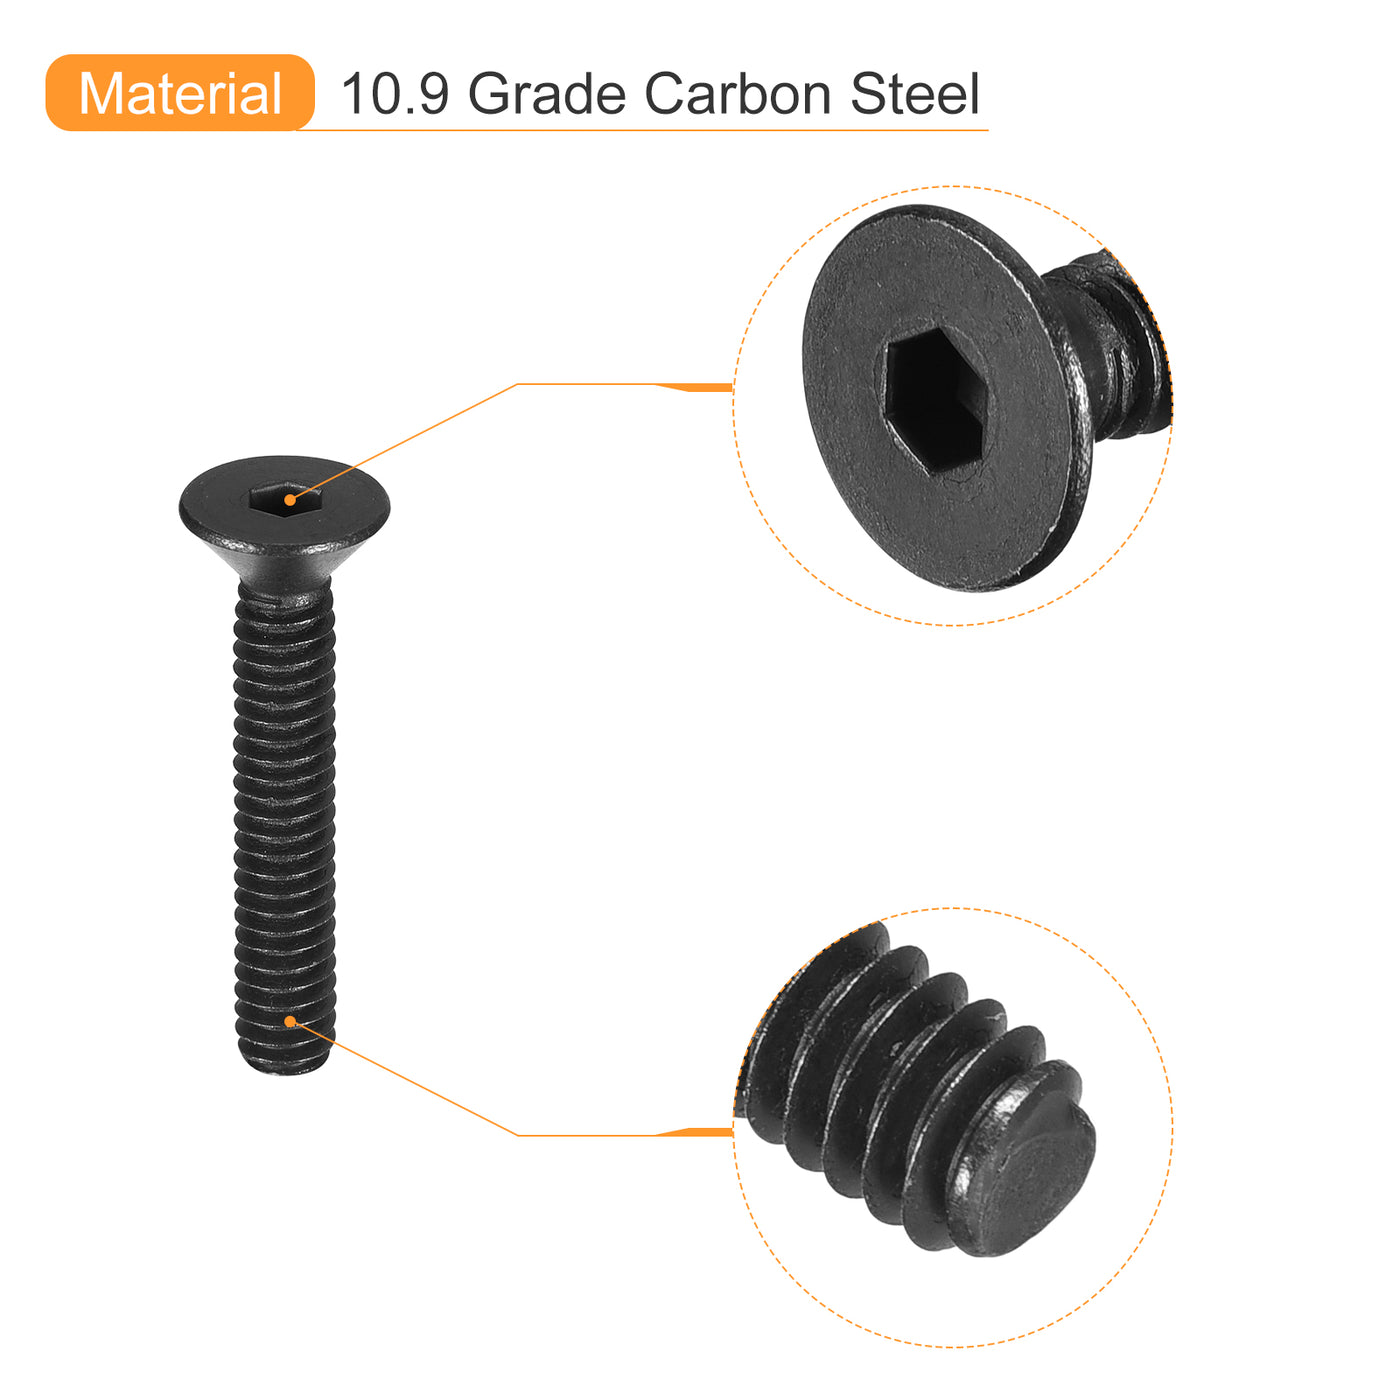 uxcell Uxcell #8-32x1" Flat Head Socket Cap Screws, 10.9 Grade Carbon, Black, 10pcs